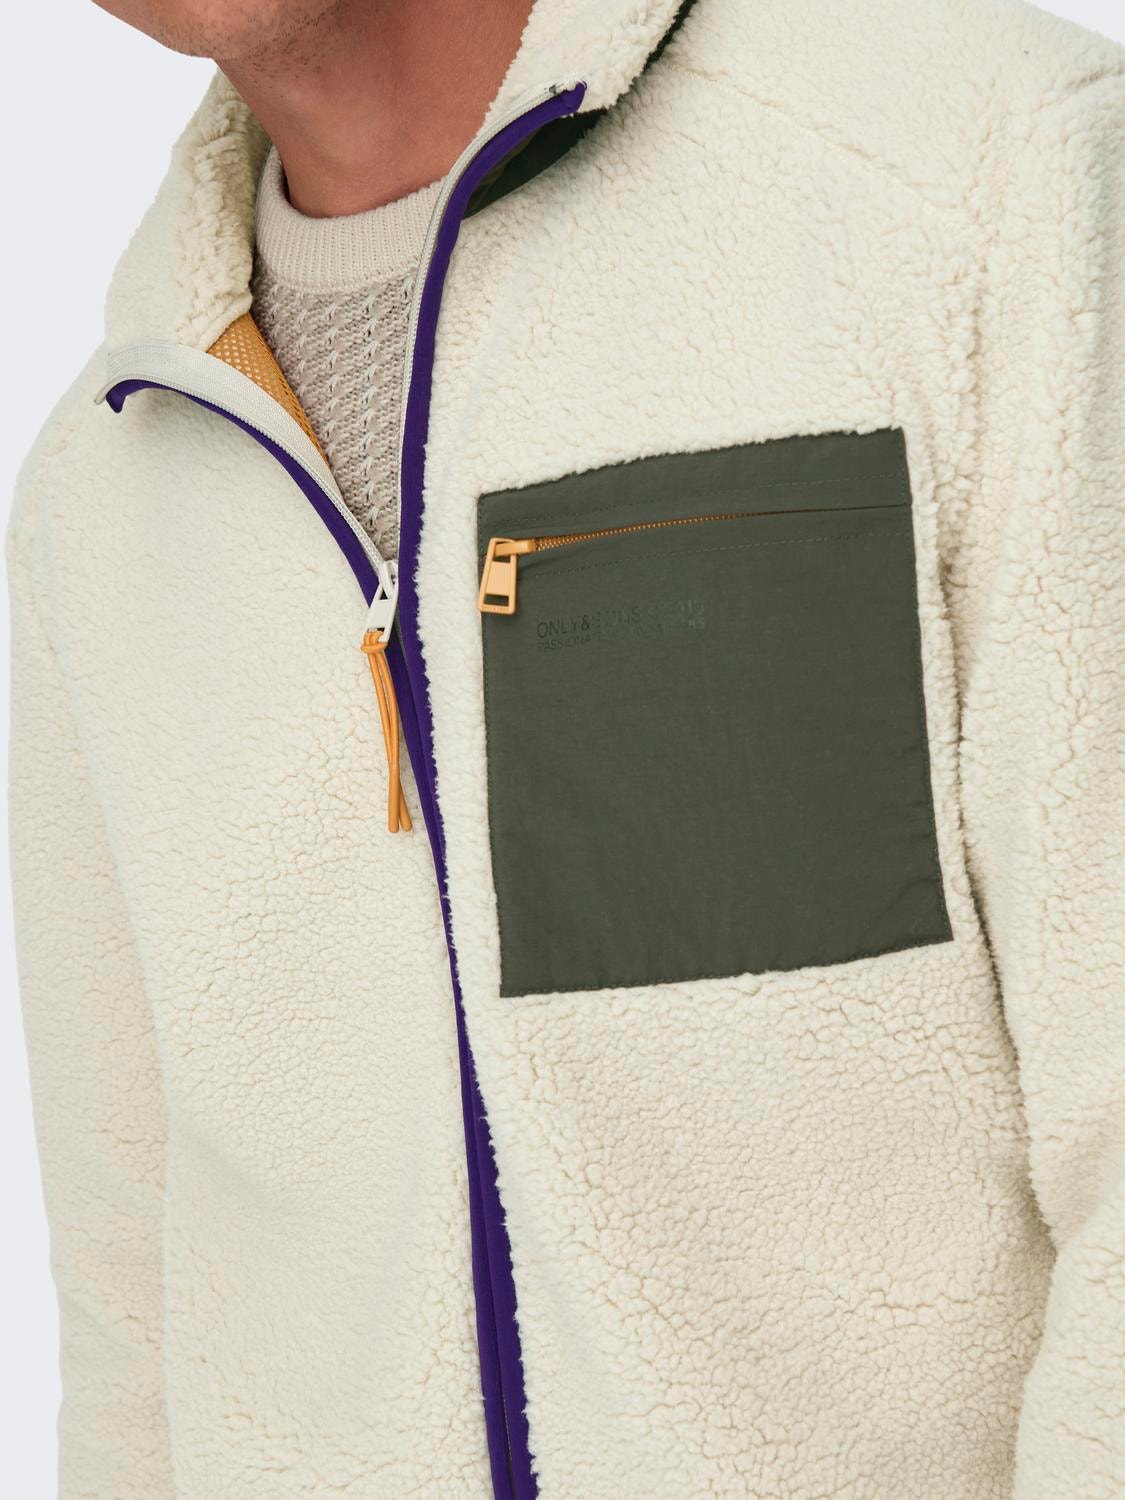 Men's Sherpa Fleece Jacket, Only & Sons